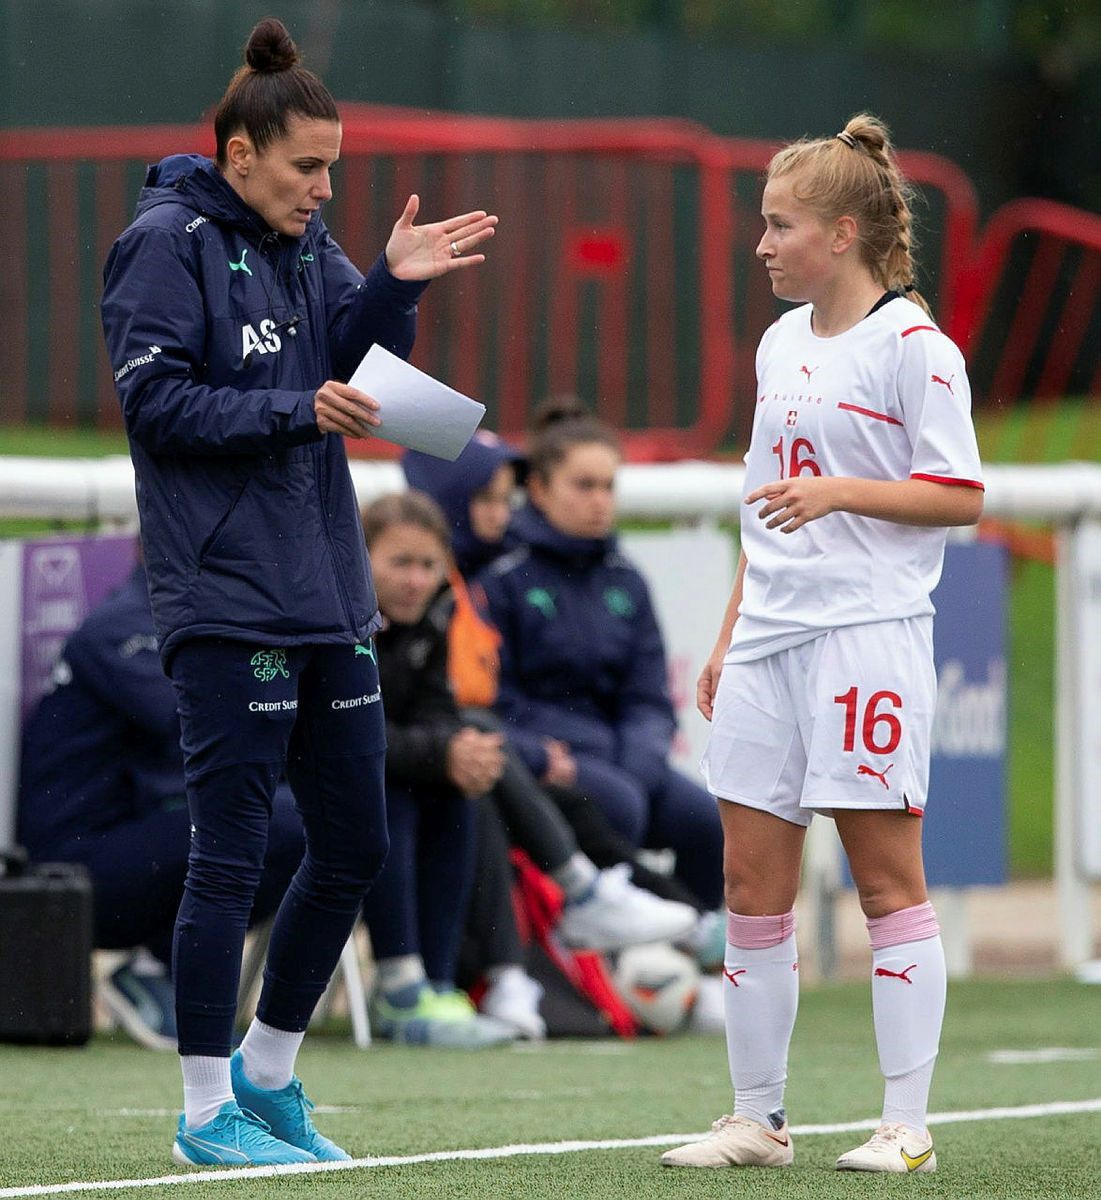 Bár a 30 esztendős magyar edző szakmai tudását a férfi futball közegében is elismerik, Szarvas Alexandra mindig fontosnak tartotta, hogy a női labdarúgástól se szakadjon el – a Thun mellett asszisztens edzőként dolgozik női U19-es svájci válogatottnál.